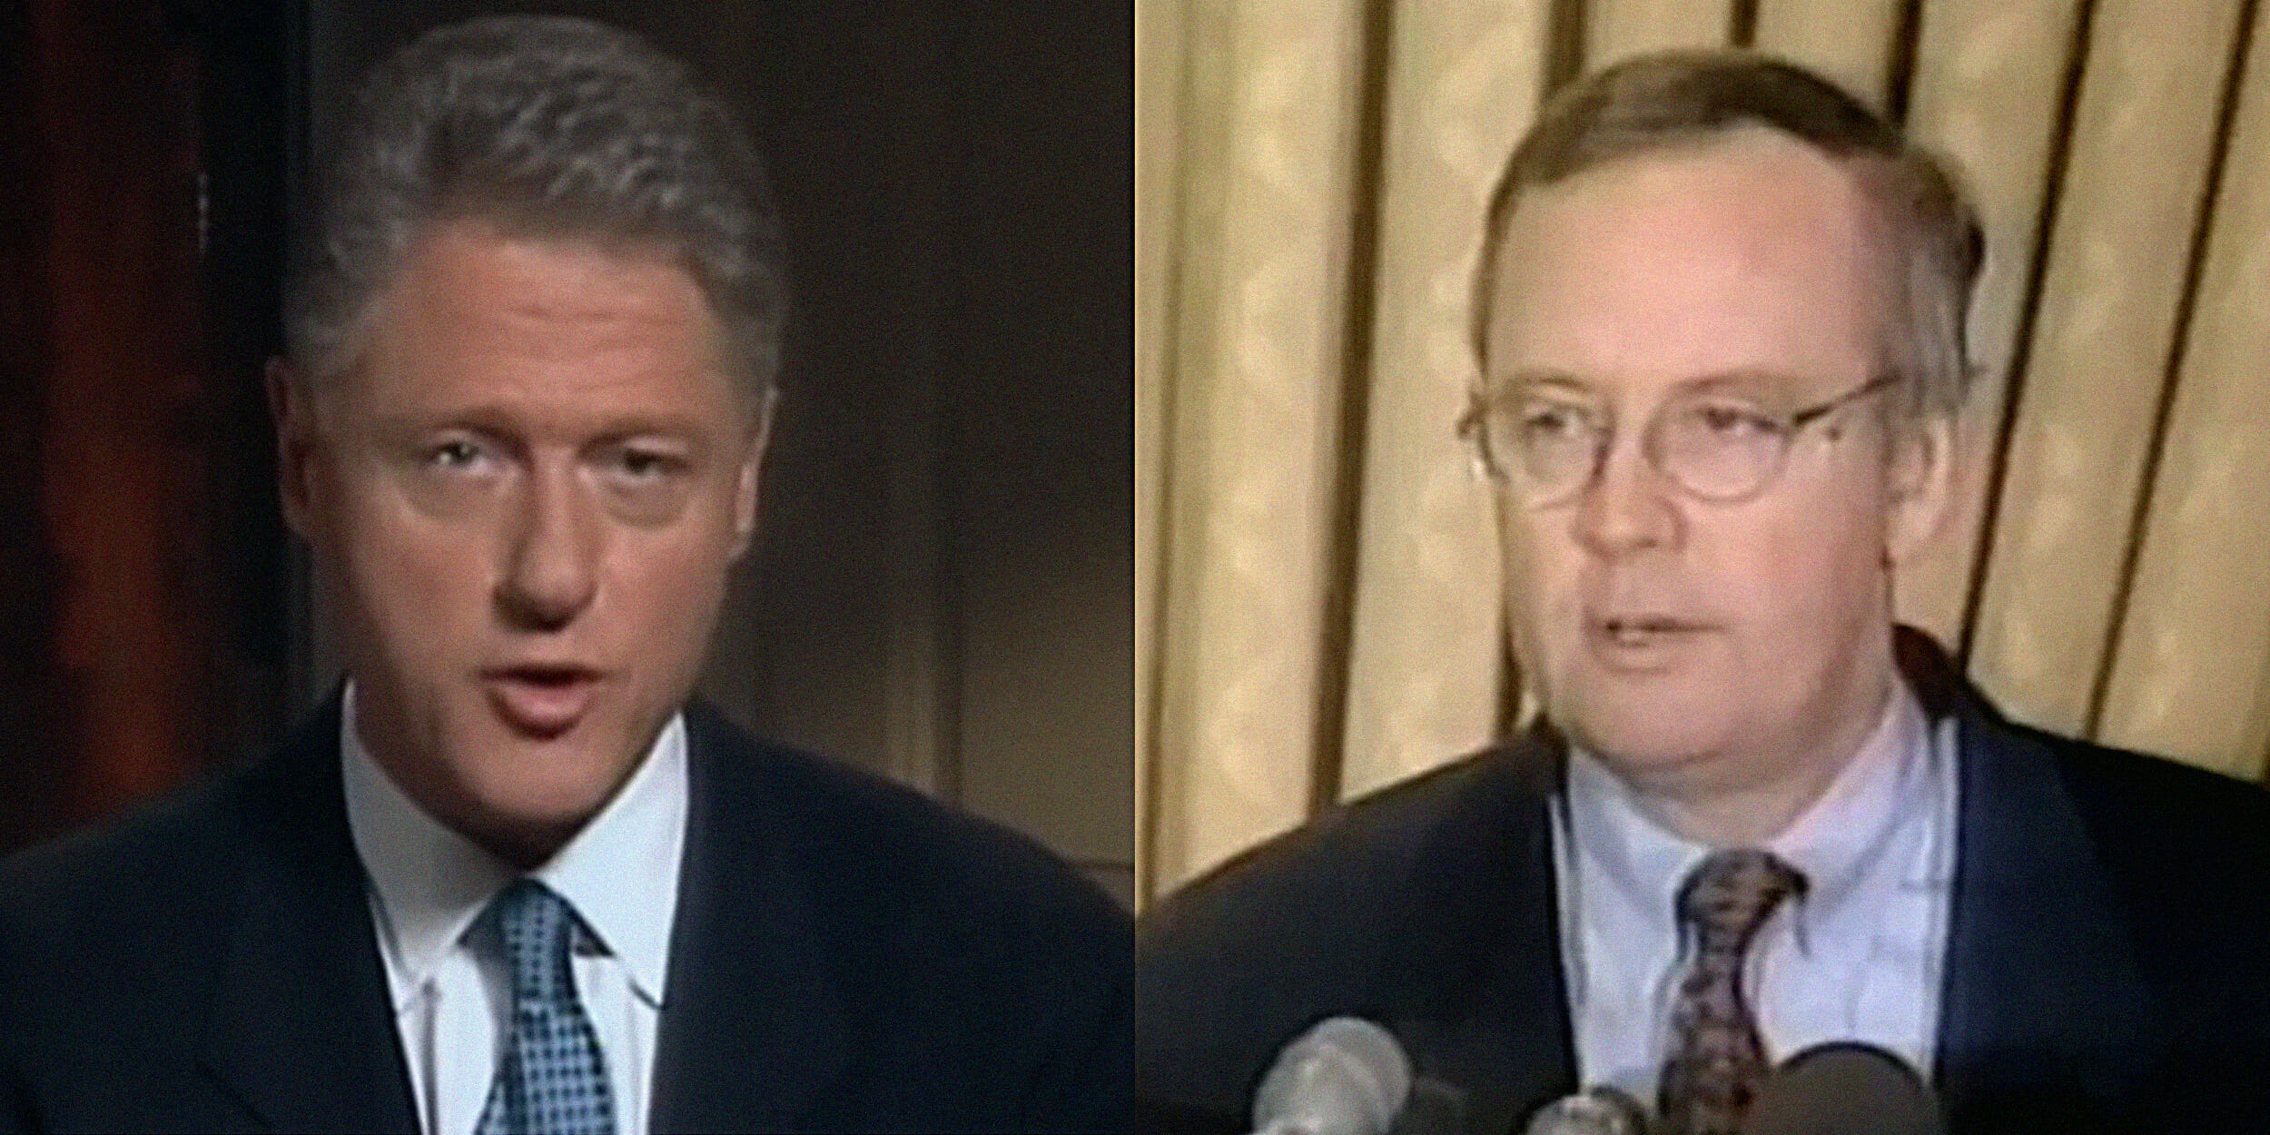 Bill Clinton and Kenn Starr